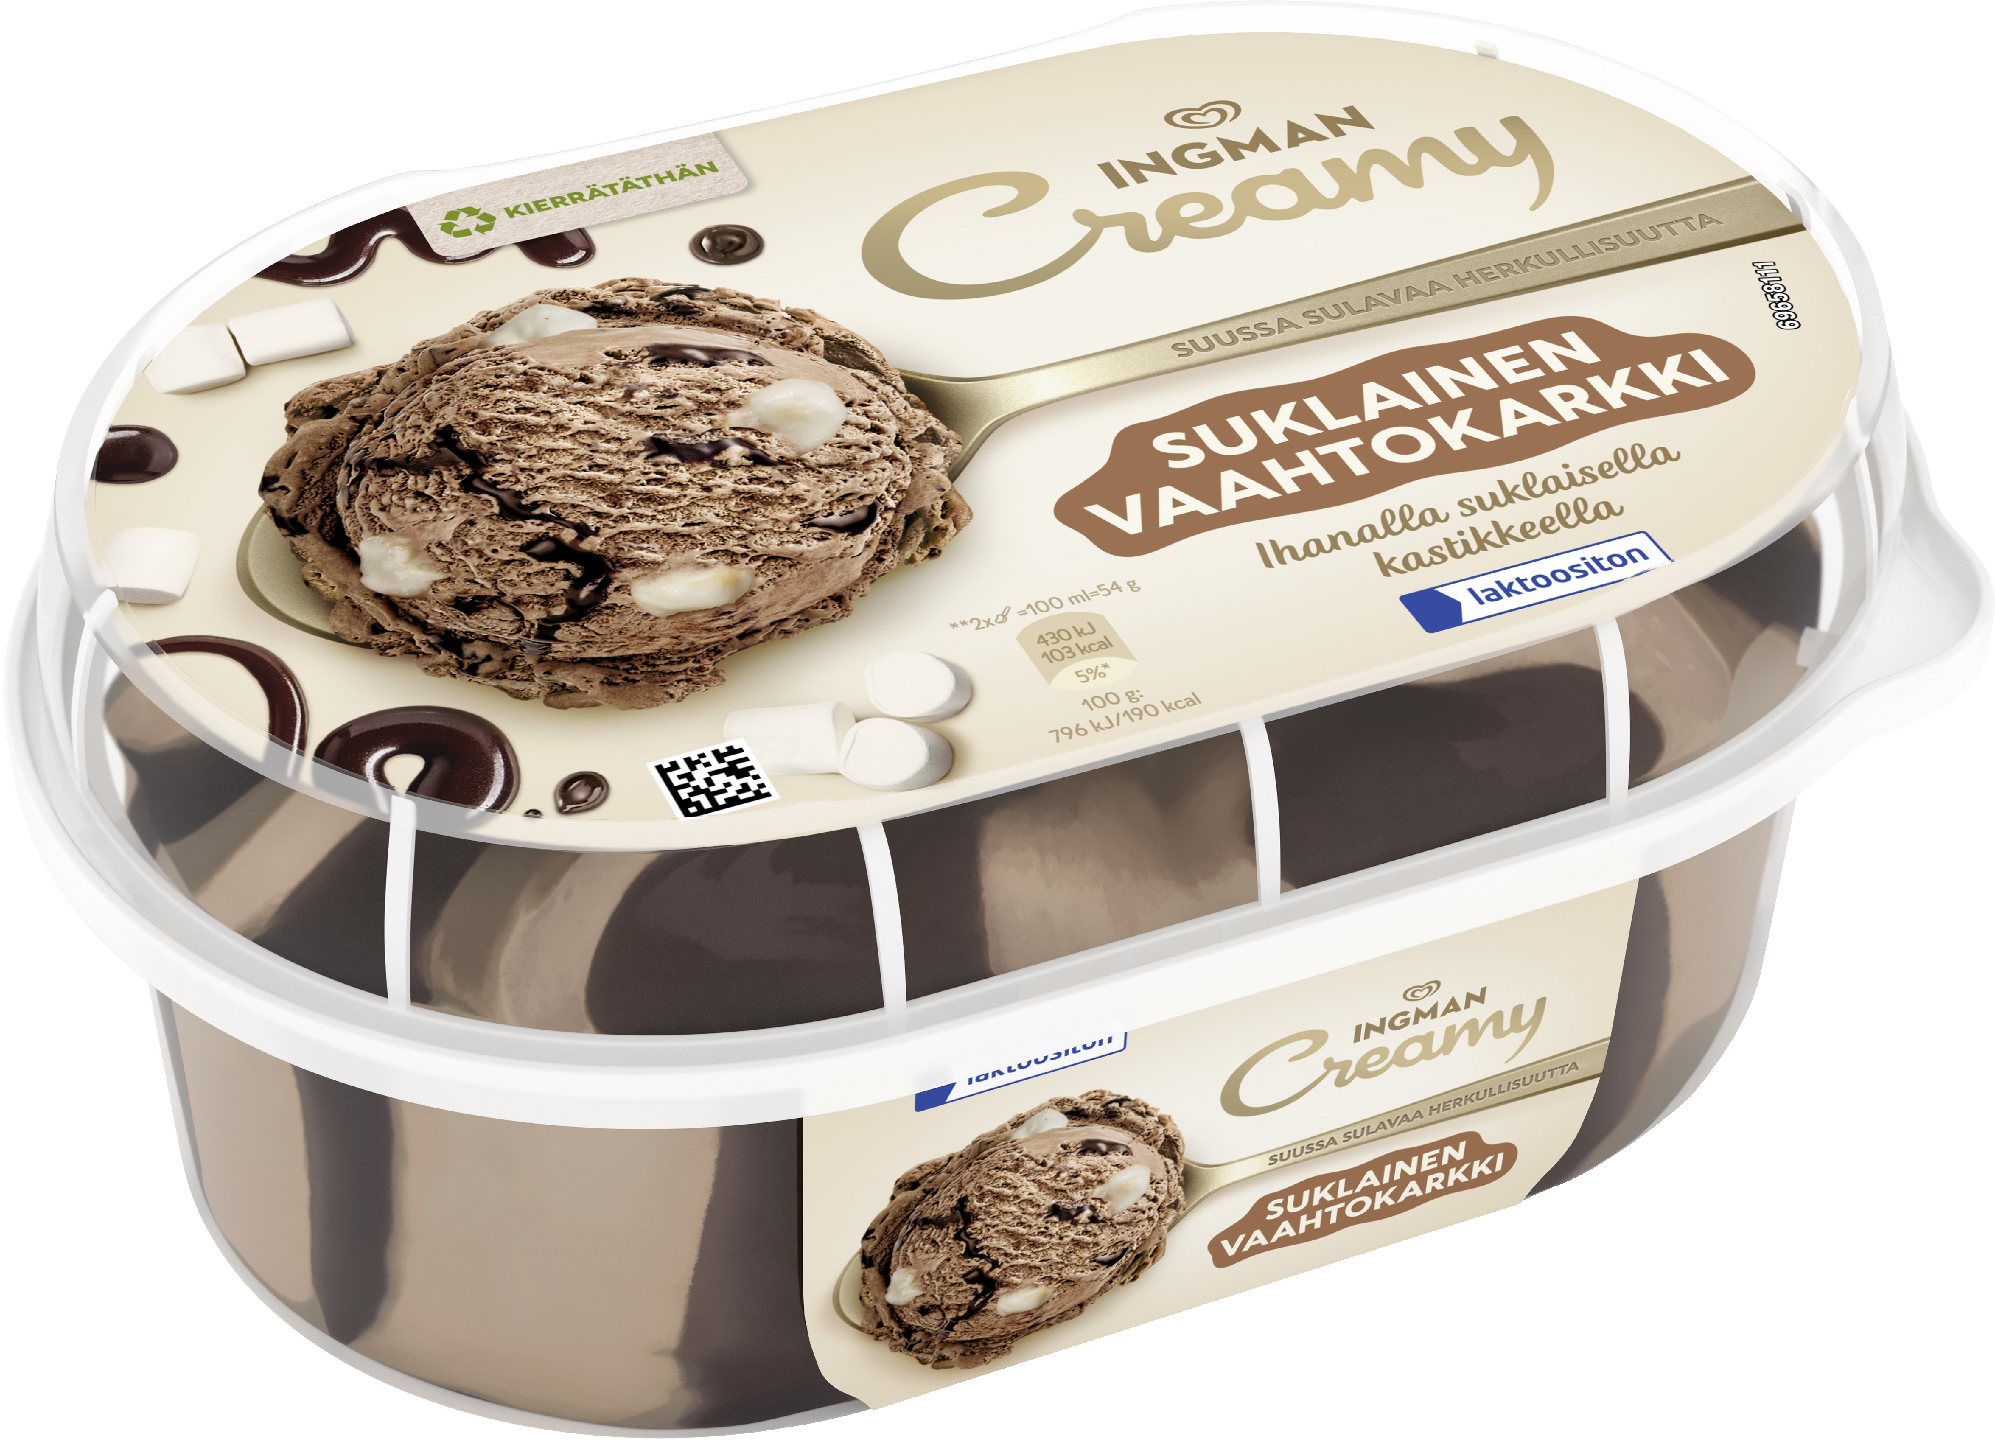 Ingman Creamy Suklainen Vaahtokarkki laktoositon Jäätelö 850ml/49